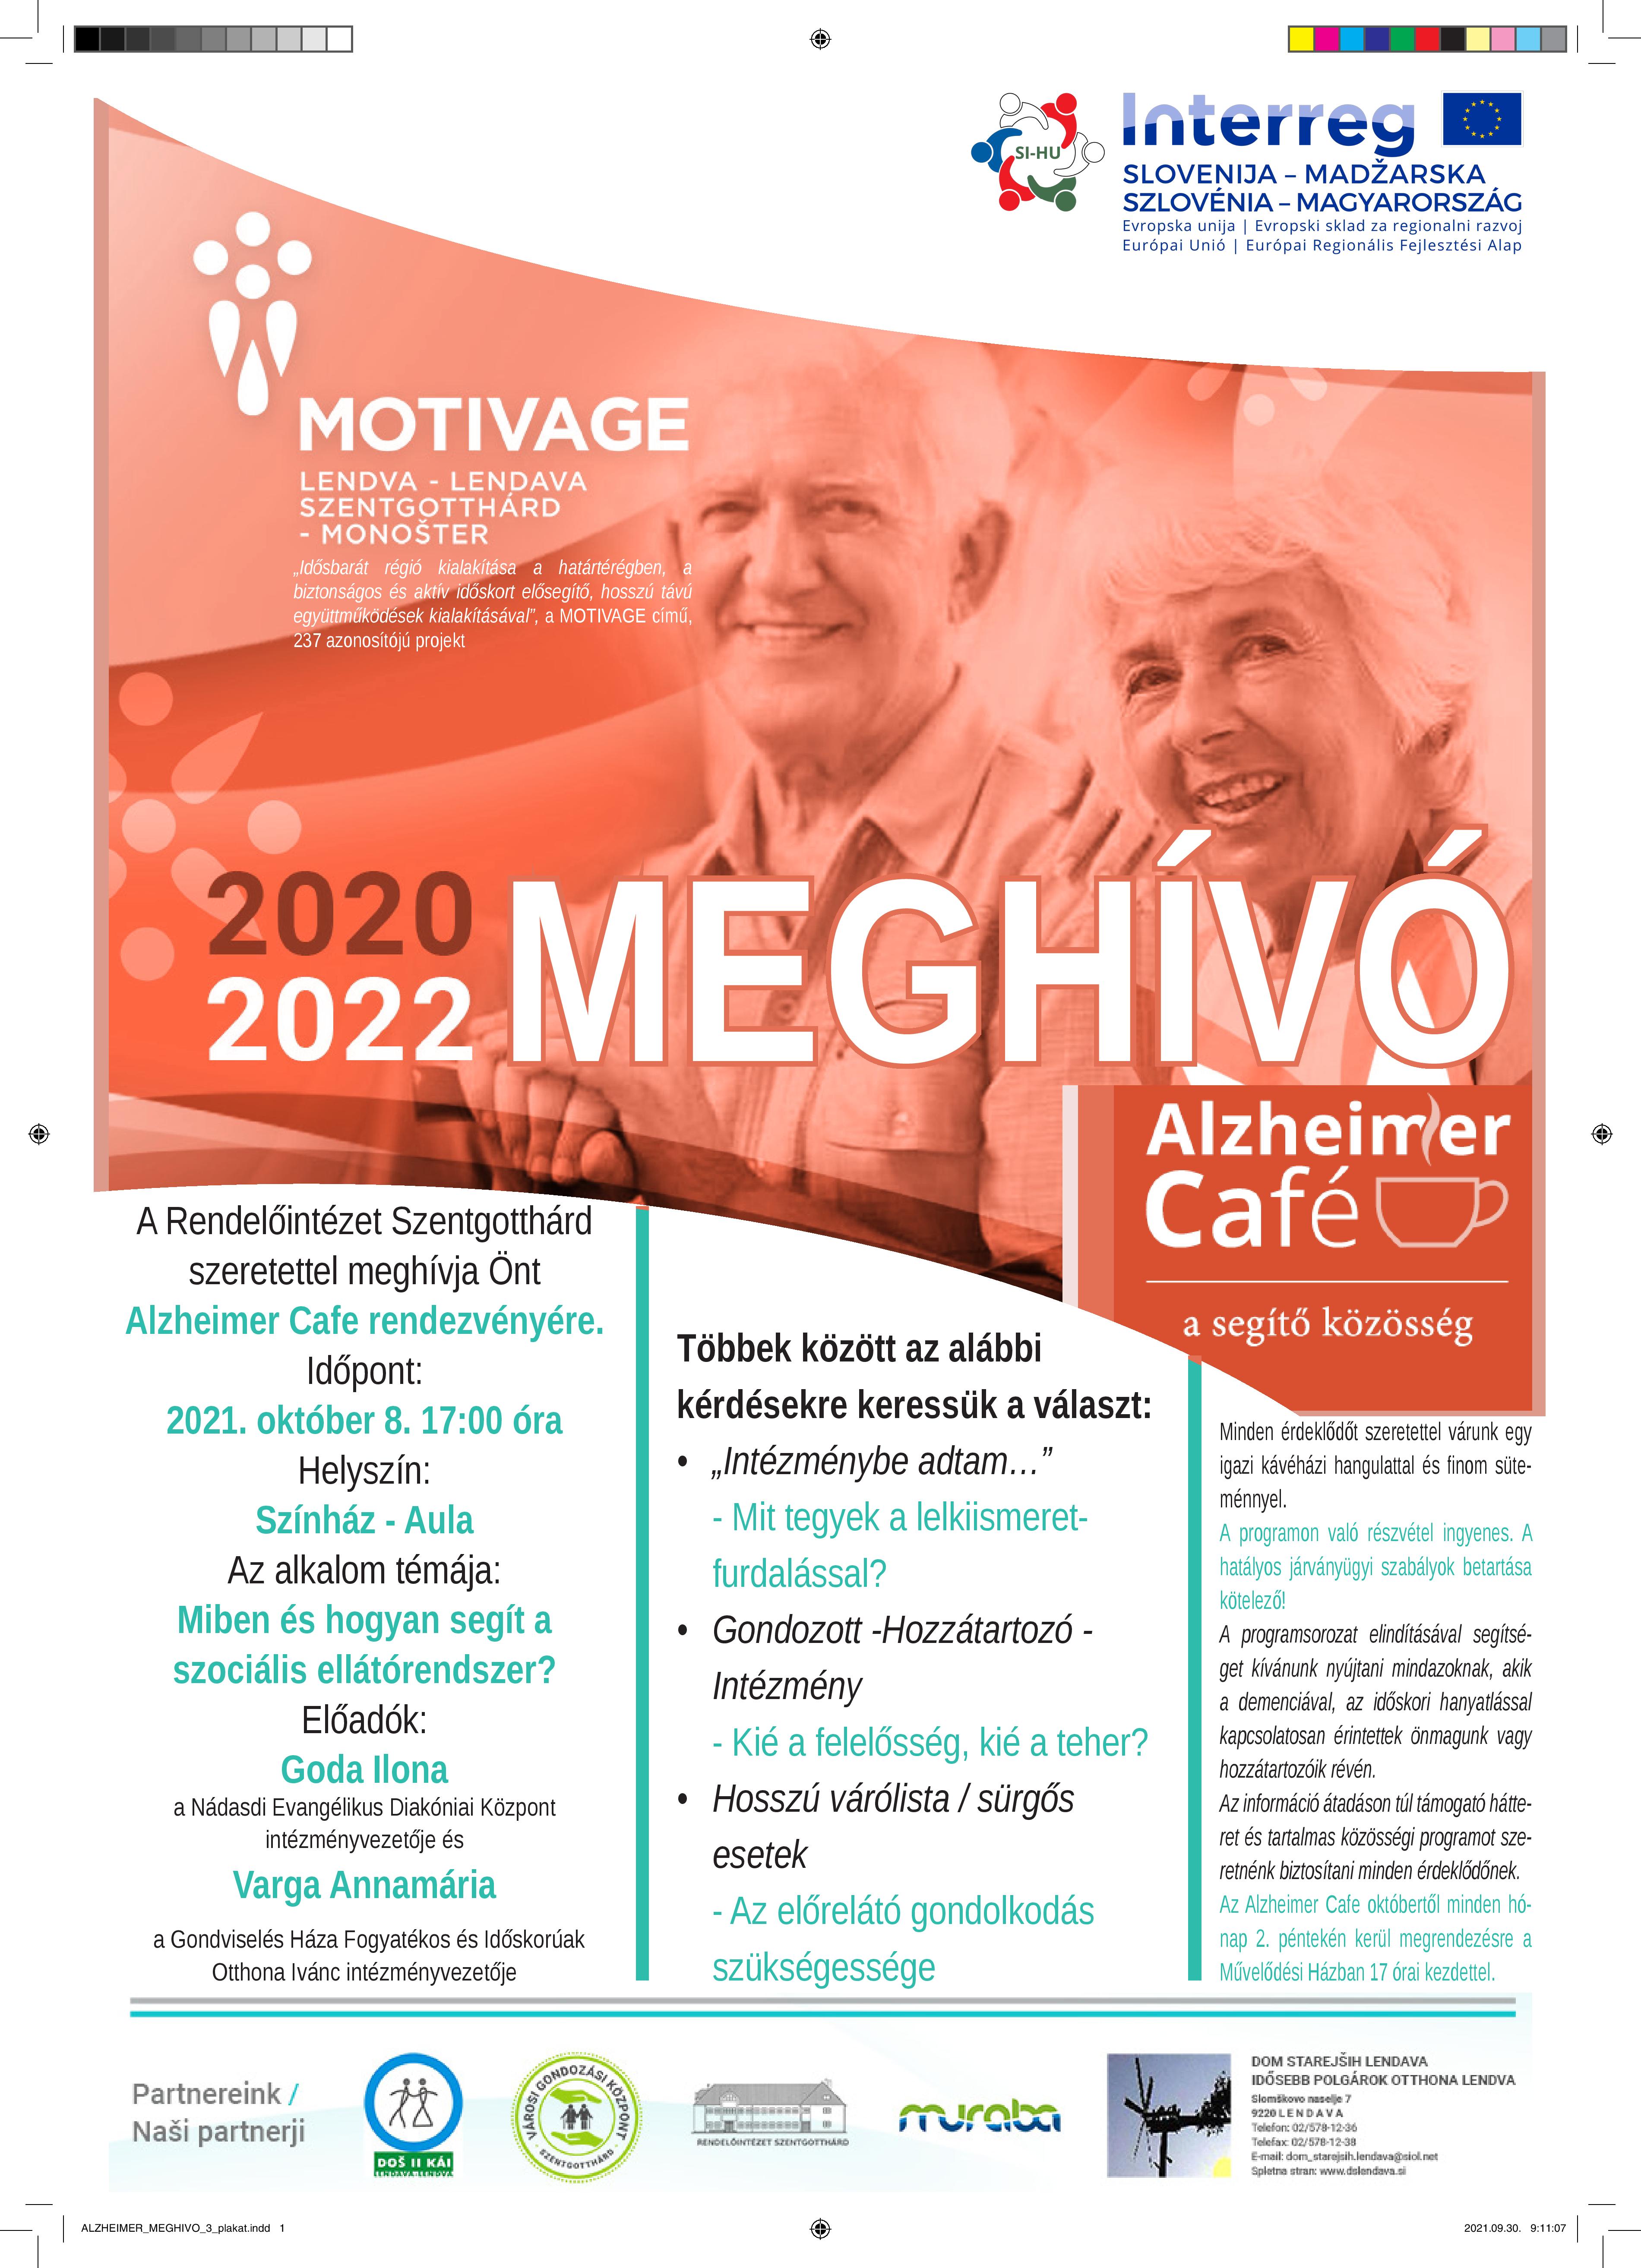 Interreg Szlovénia-Magyarország Európai Unió/Európai Regionális Fejlesztési Alap. Motivage Lendva-Szentgotthárd "Idősbarát régió kialakítása a határtérségben a biztonságos és aktív időskort elősegítő hosszú távú együttműködések kialakításával", a Motivage című 237 azonosítójú projekt. 2020 Meghívó Alzheimer Café a segítő közösség. A Rendelőintézet Szentgotthárd szeretettel meghívja Önt Alzheimer Cafe rendezvényére. Időpont: 2021.október 8. 17:00 óra Helyszín: Színház Aula Az alkalom témája: Miben és hogyan segít a szociális ellátórendszer? Előadók: Goda Ilona a Nádasdi Evangélikus Diakóniai Központ intézményvezetője és Varga Annamária a Gondviselés Háza Fogyatékos és Időskorúak Otthona Ivánc intézményvezetője. Többek között az alábbi kérdésekre keressük a választ:  "Intézménybe adtam...." Mit tegyek a lelkiismeretfurdalással? Gondozott - Hozzátartozó - Intézmény Kié a felelősség, kié a teher? Hosszú várólista/sürgős esetek Az előrelátó gondoskodás szükségessége